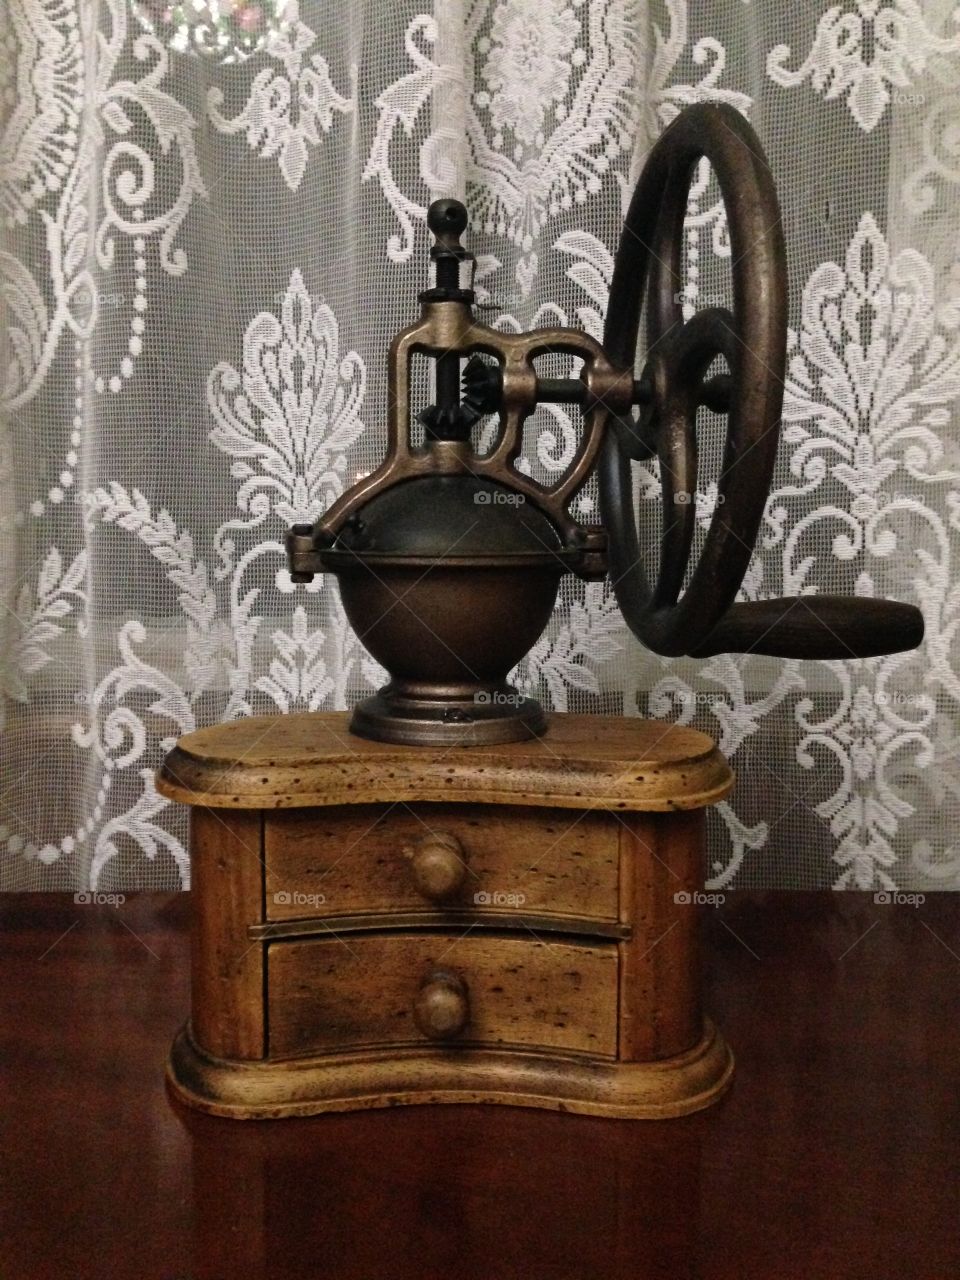 Antique Victorian Coffee Grinder